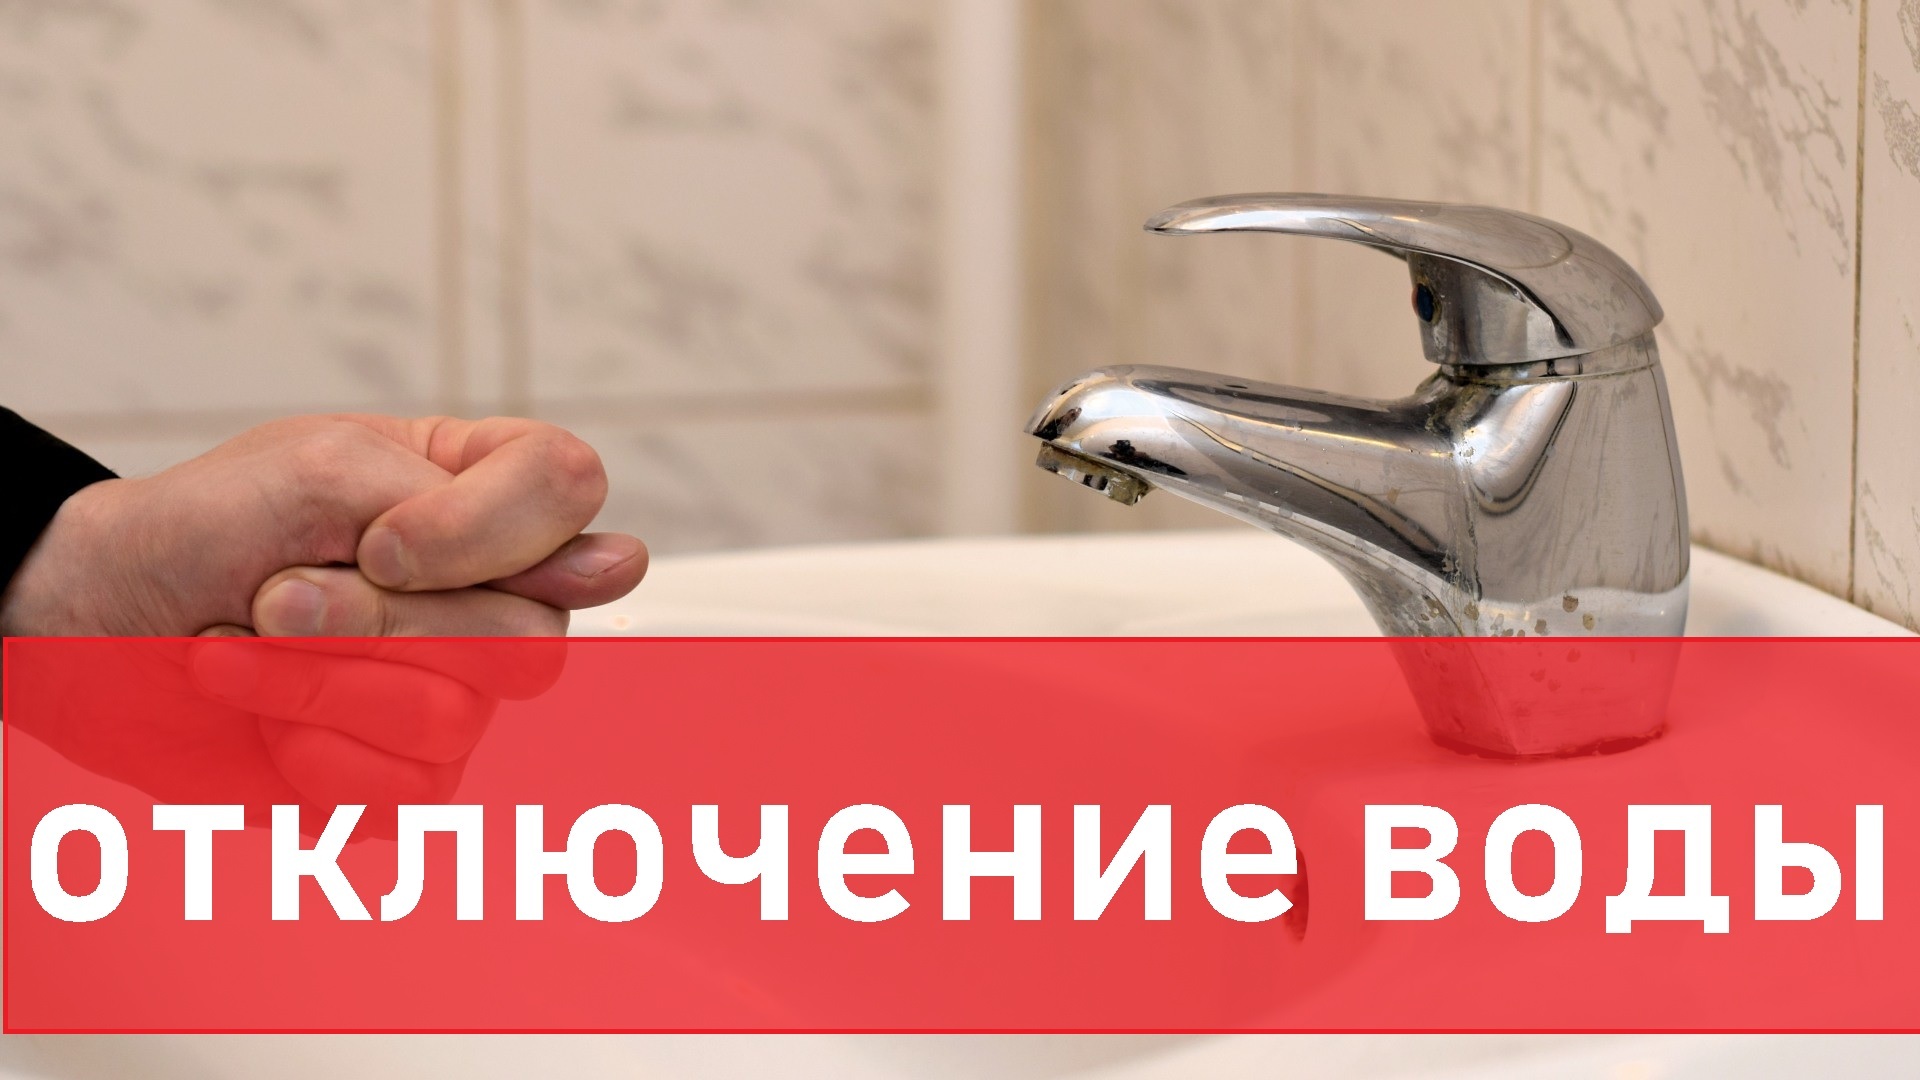 Во Владивостоке два дня будут отключать холодную воду